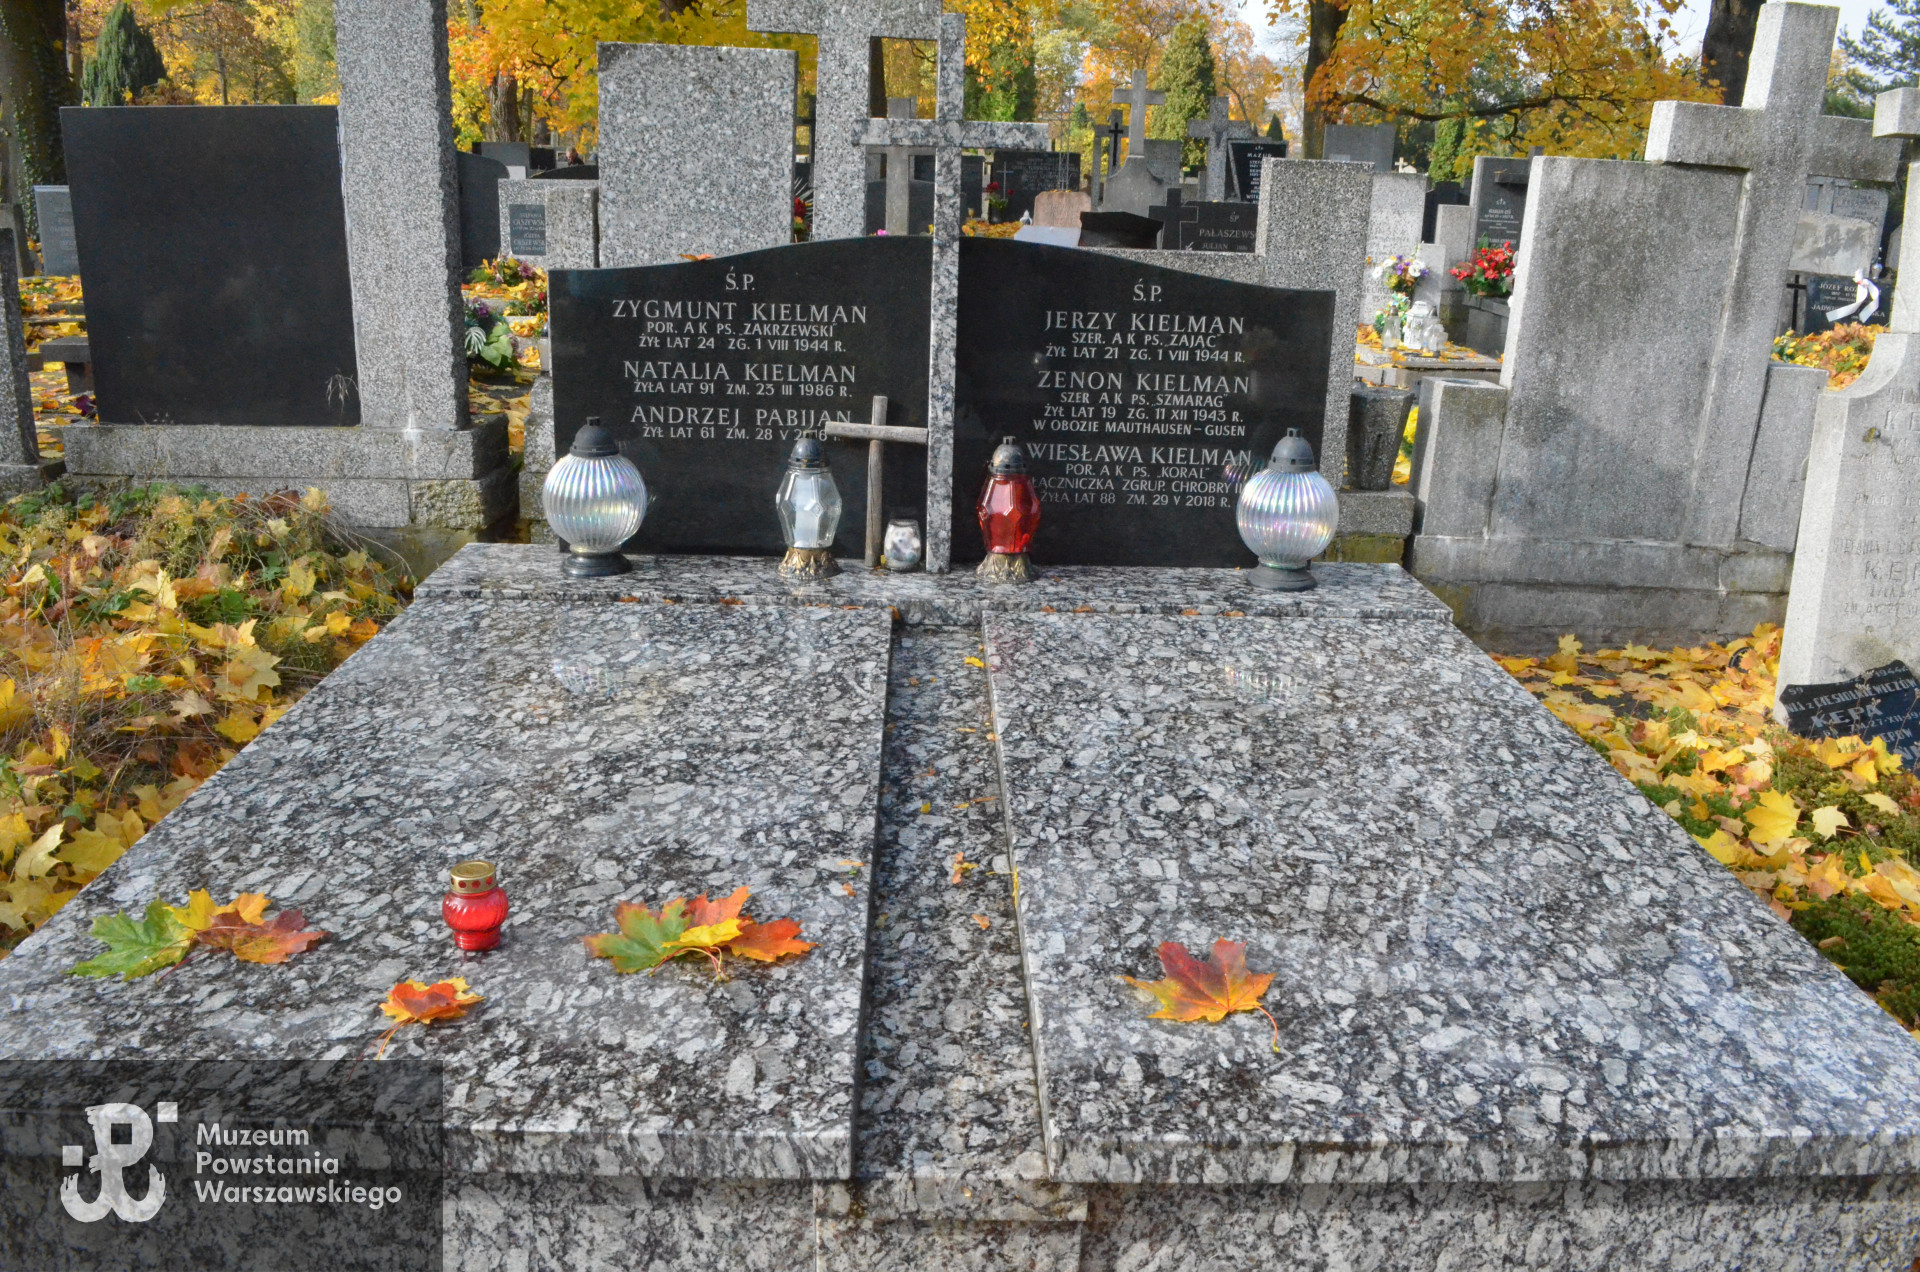 Cmentarz Bródnowski w Warszawie, kwatera 36B, rząd 5, grób 19. Fot. z zasobu Działu Historycznego MPW - projekt "Baza Grobów Powstańczych".